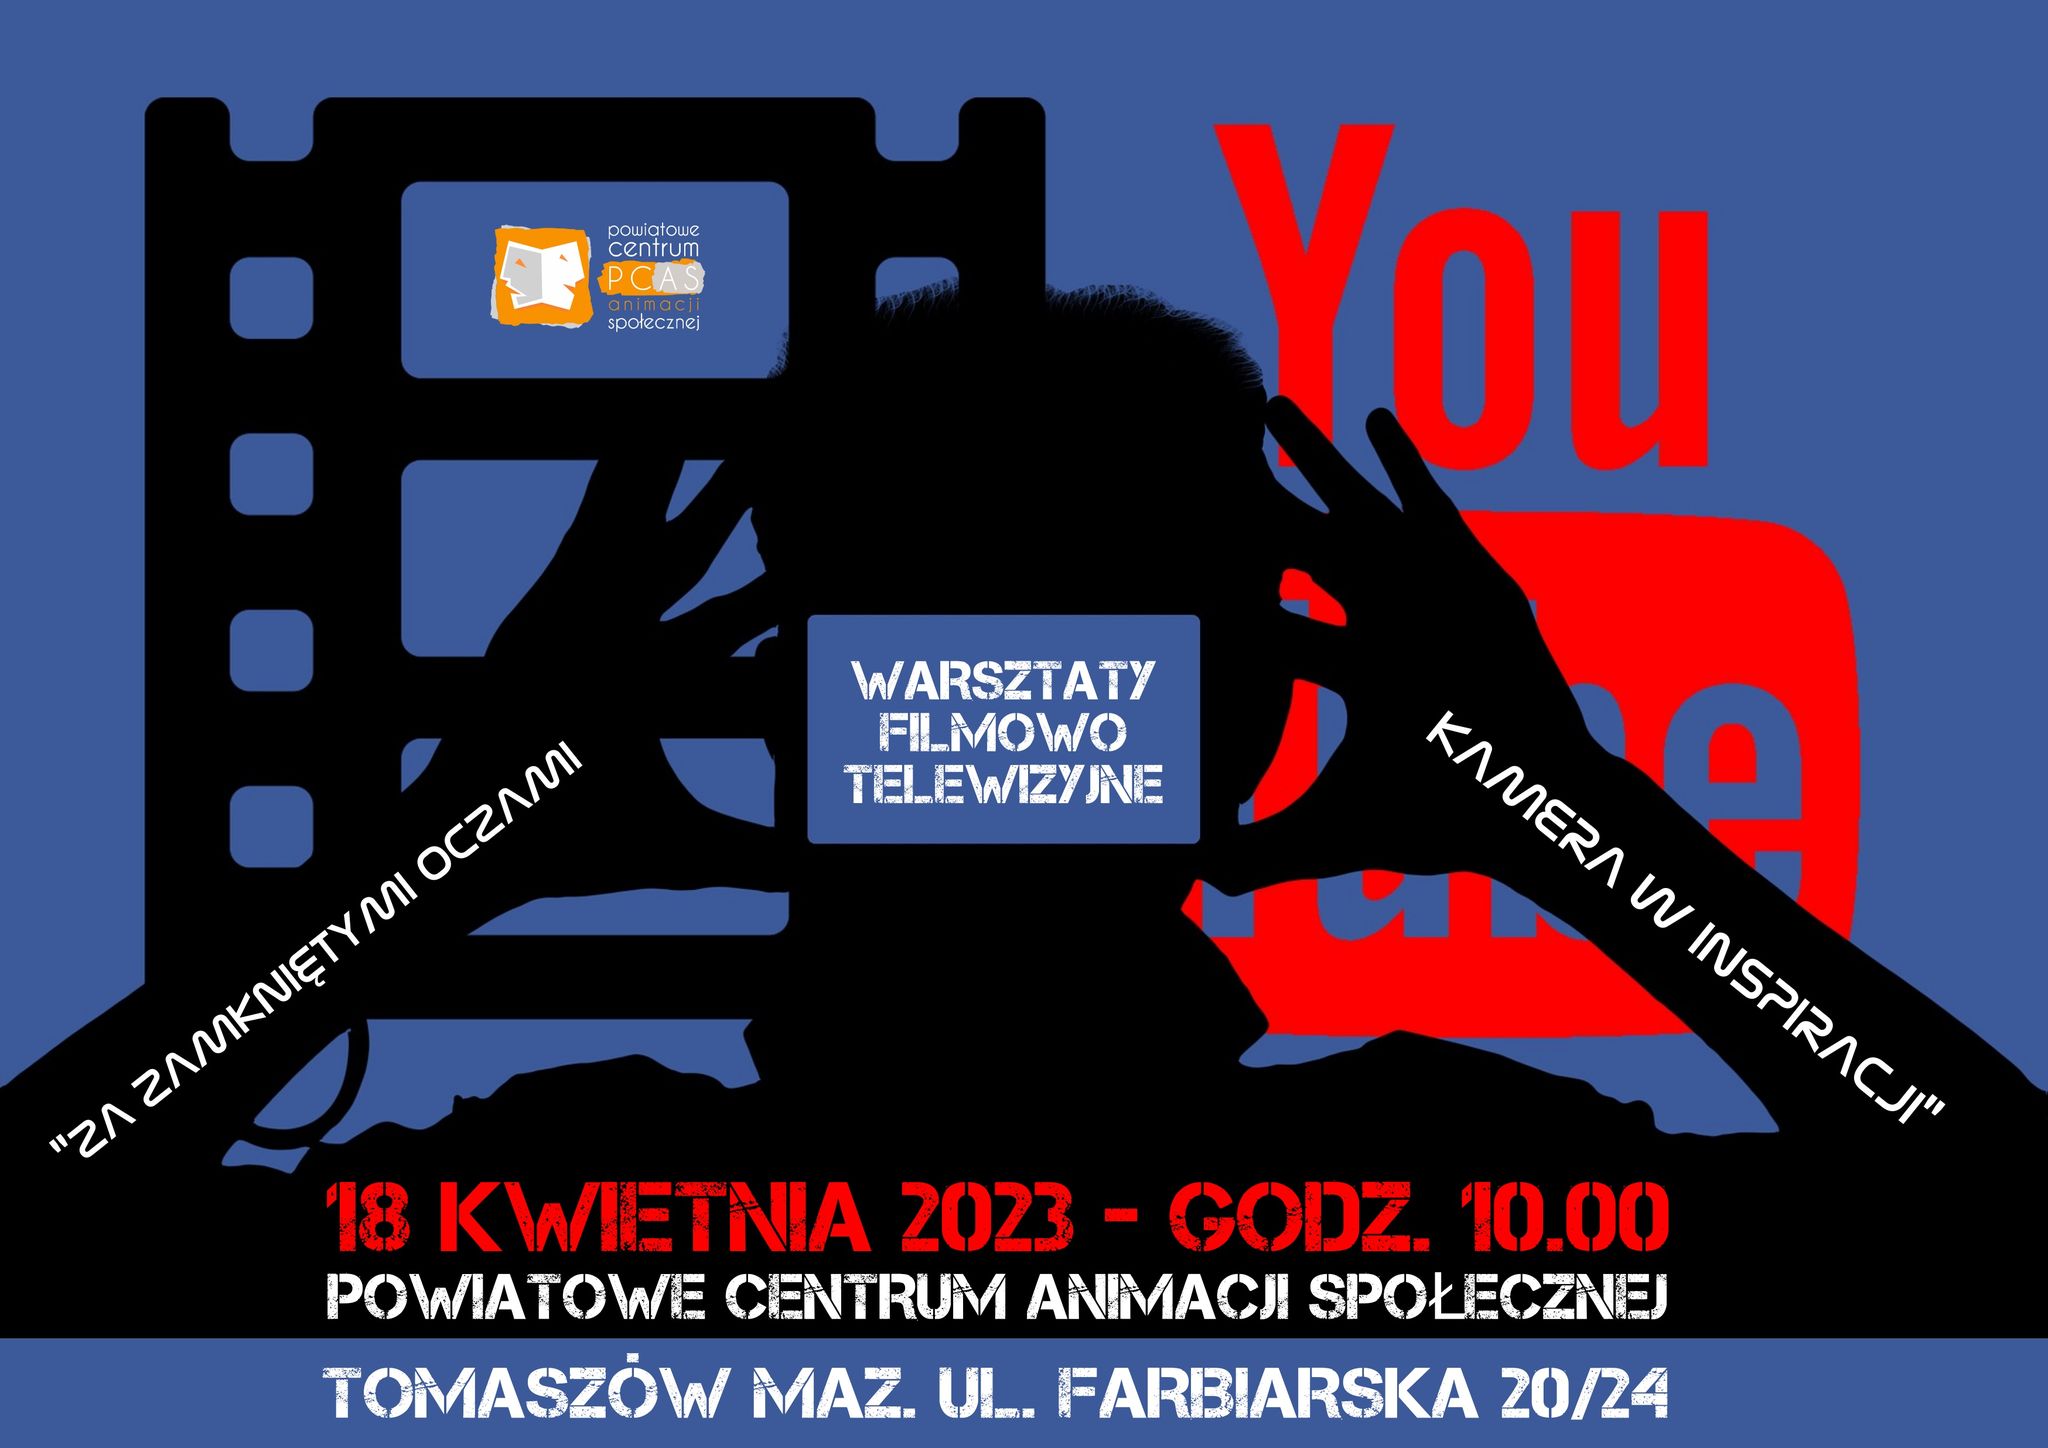 Na zdjęciu: plakat informujący o warsztatach filmowo-telewizyjnych, które odbędą się w Powiatowym Centrum Animacji Społecznej w Tomaszowie Mazowieckim 18 kwietnia 2023 roku 